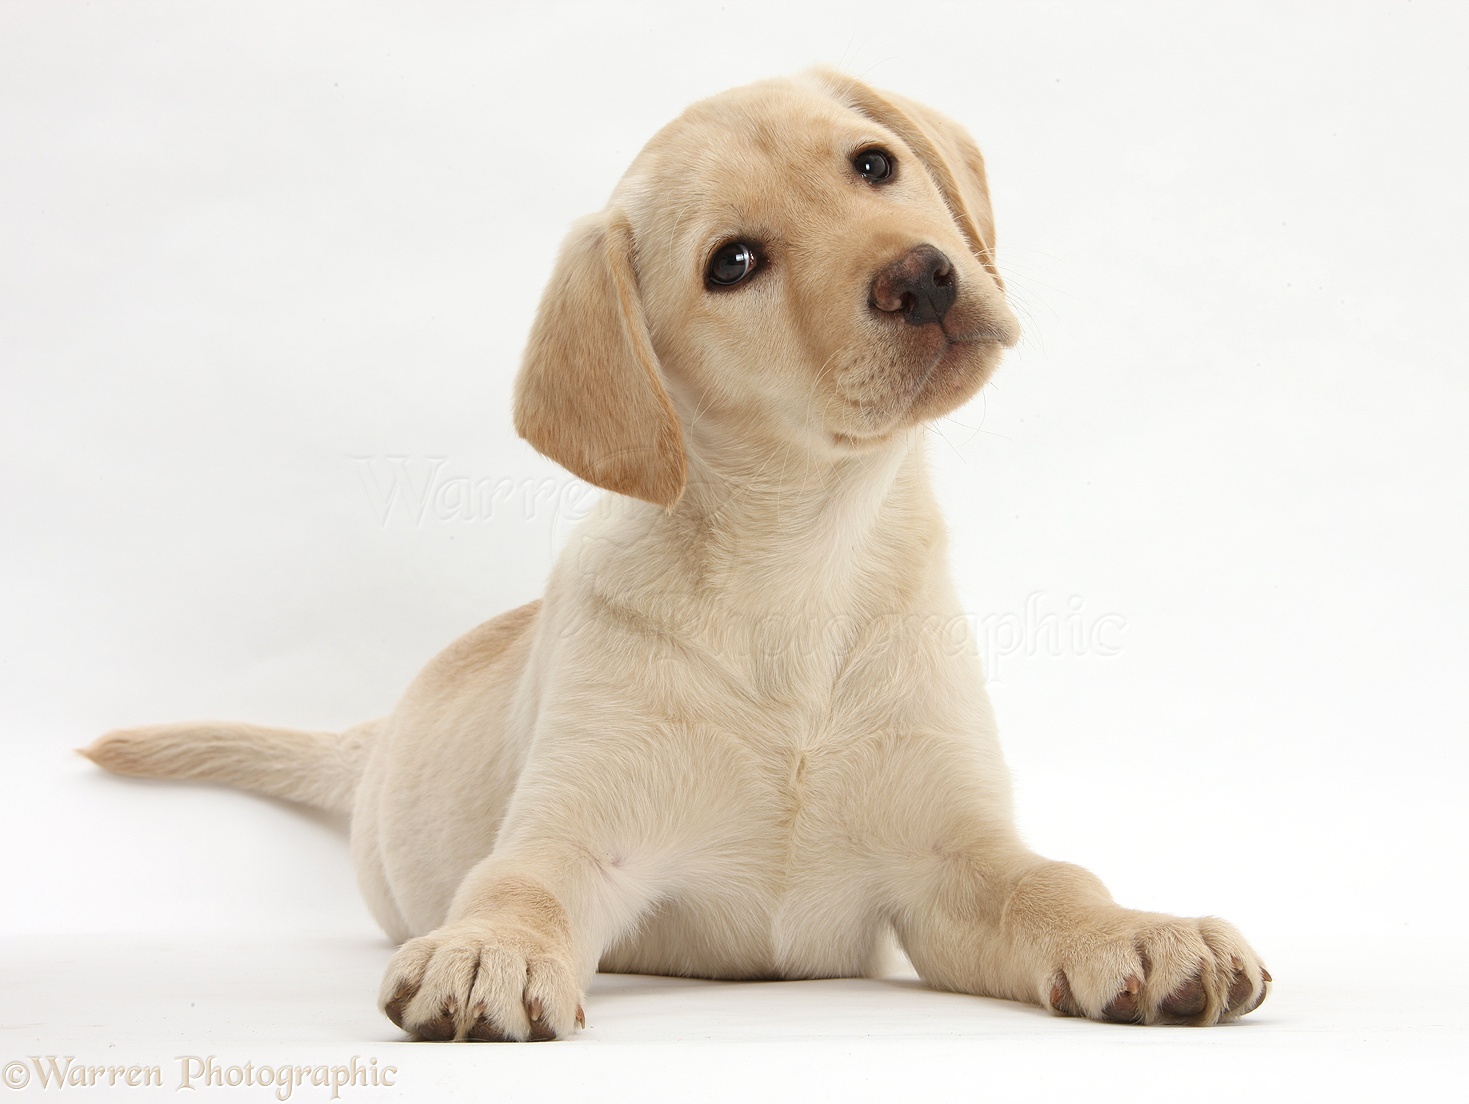 Geloofsbelijdenis hanger een Dog: Yellow Labrador Retriever puppy, 10 weeks old photo WP26562